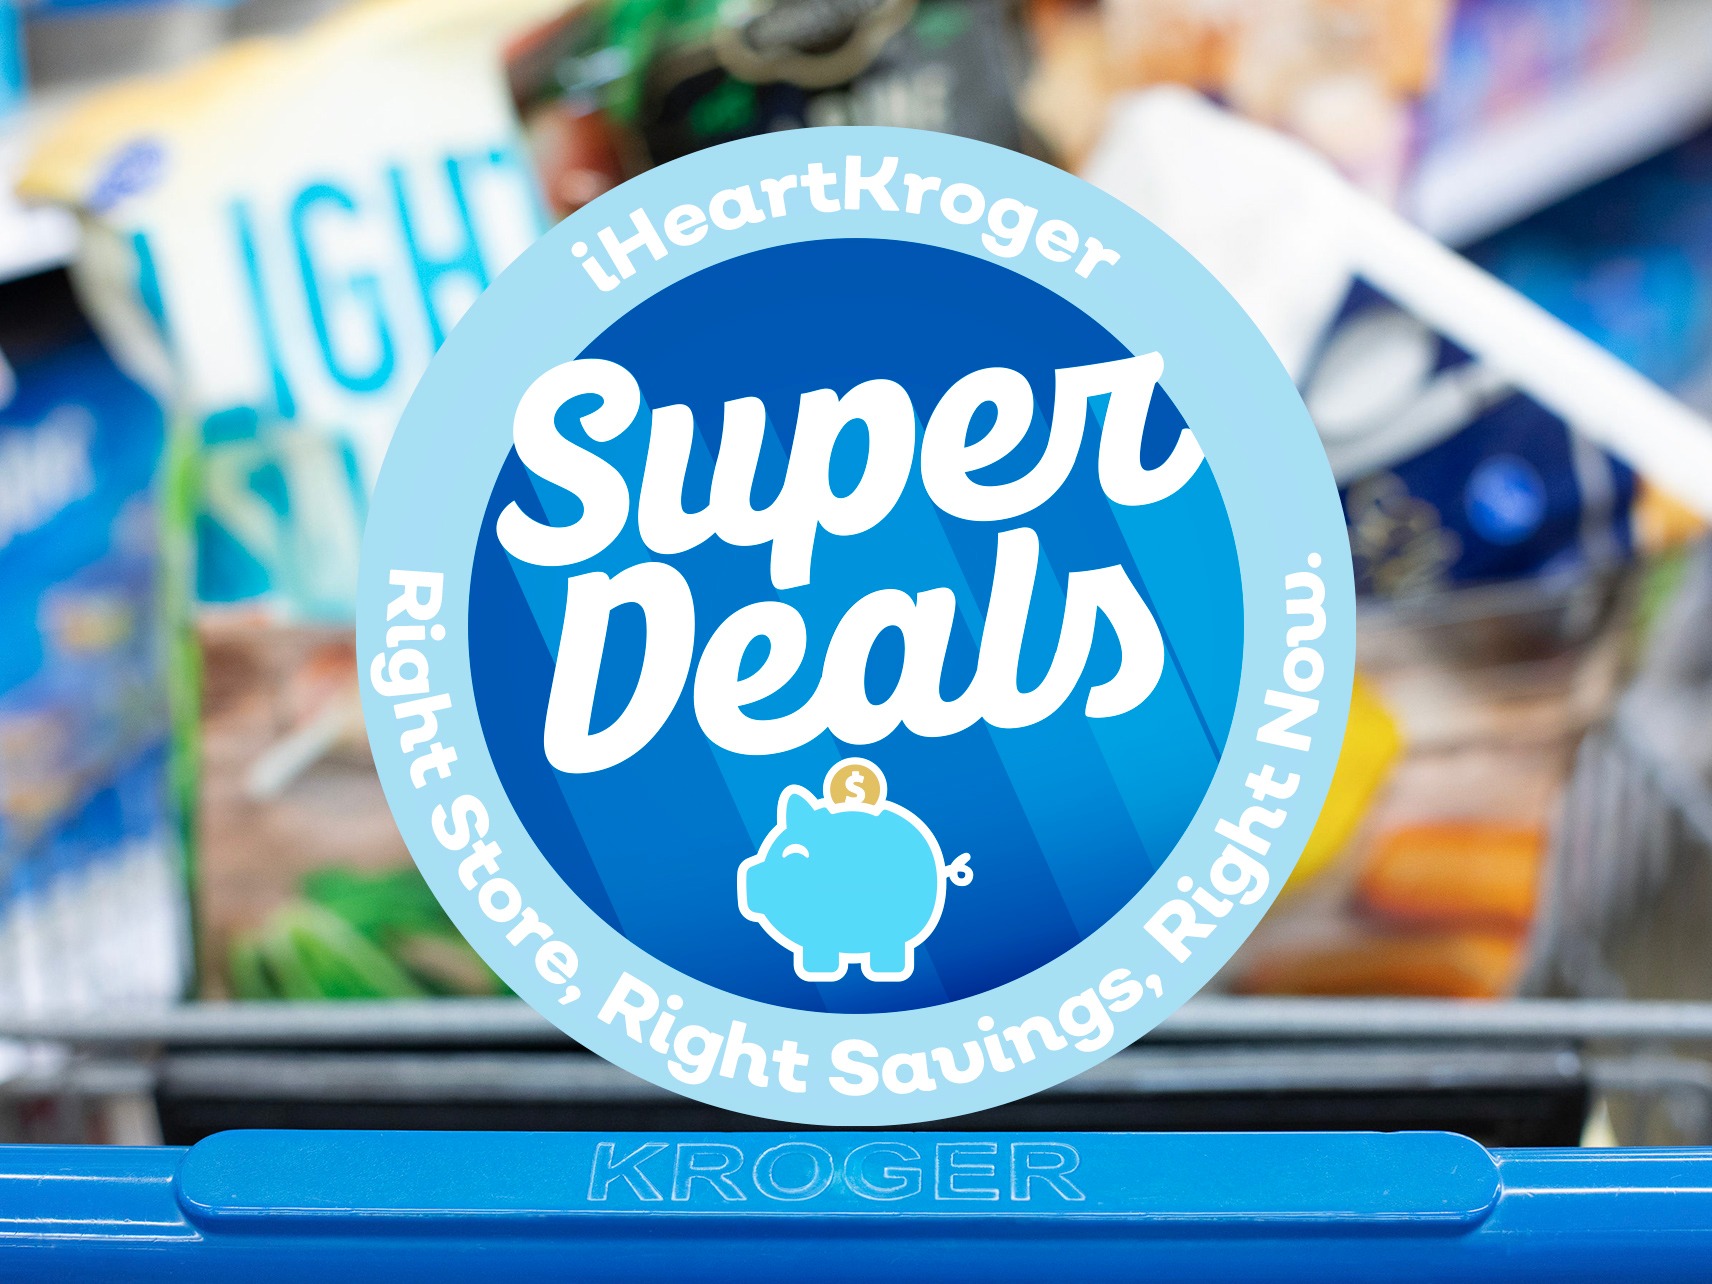 Kroger Super Deals Week Of 2/8 to 2/14